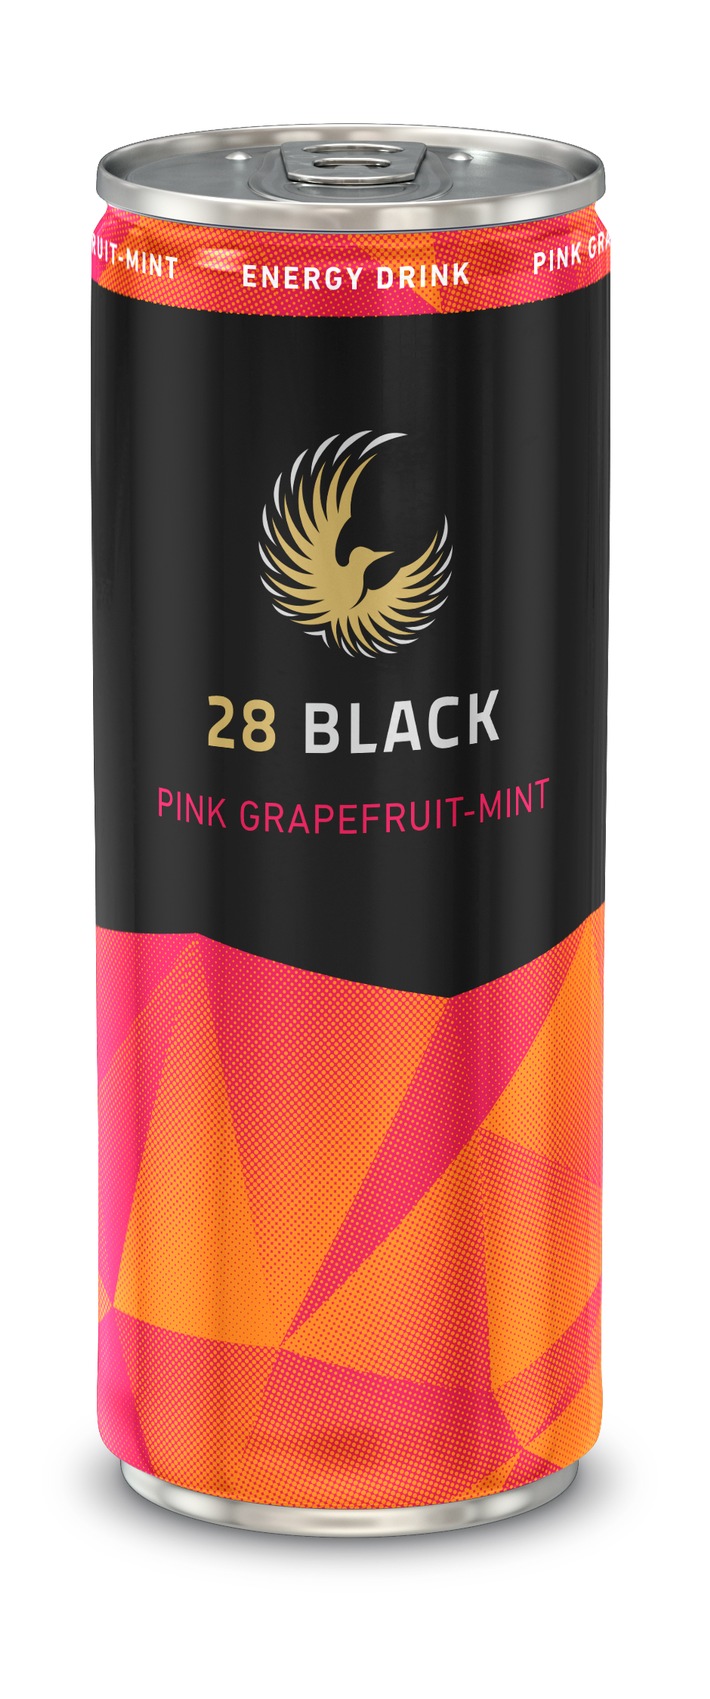 Neu im Portfolio: 28 BLACK launcht Energy Drink mit leichter Bitternote / 28 BLACK Pink Grapefruit-Mint liefert bittersüßes Vergnügen - pur und gemixt (FOTO)